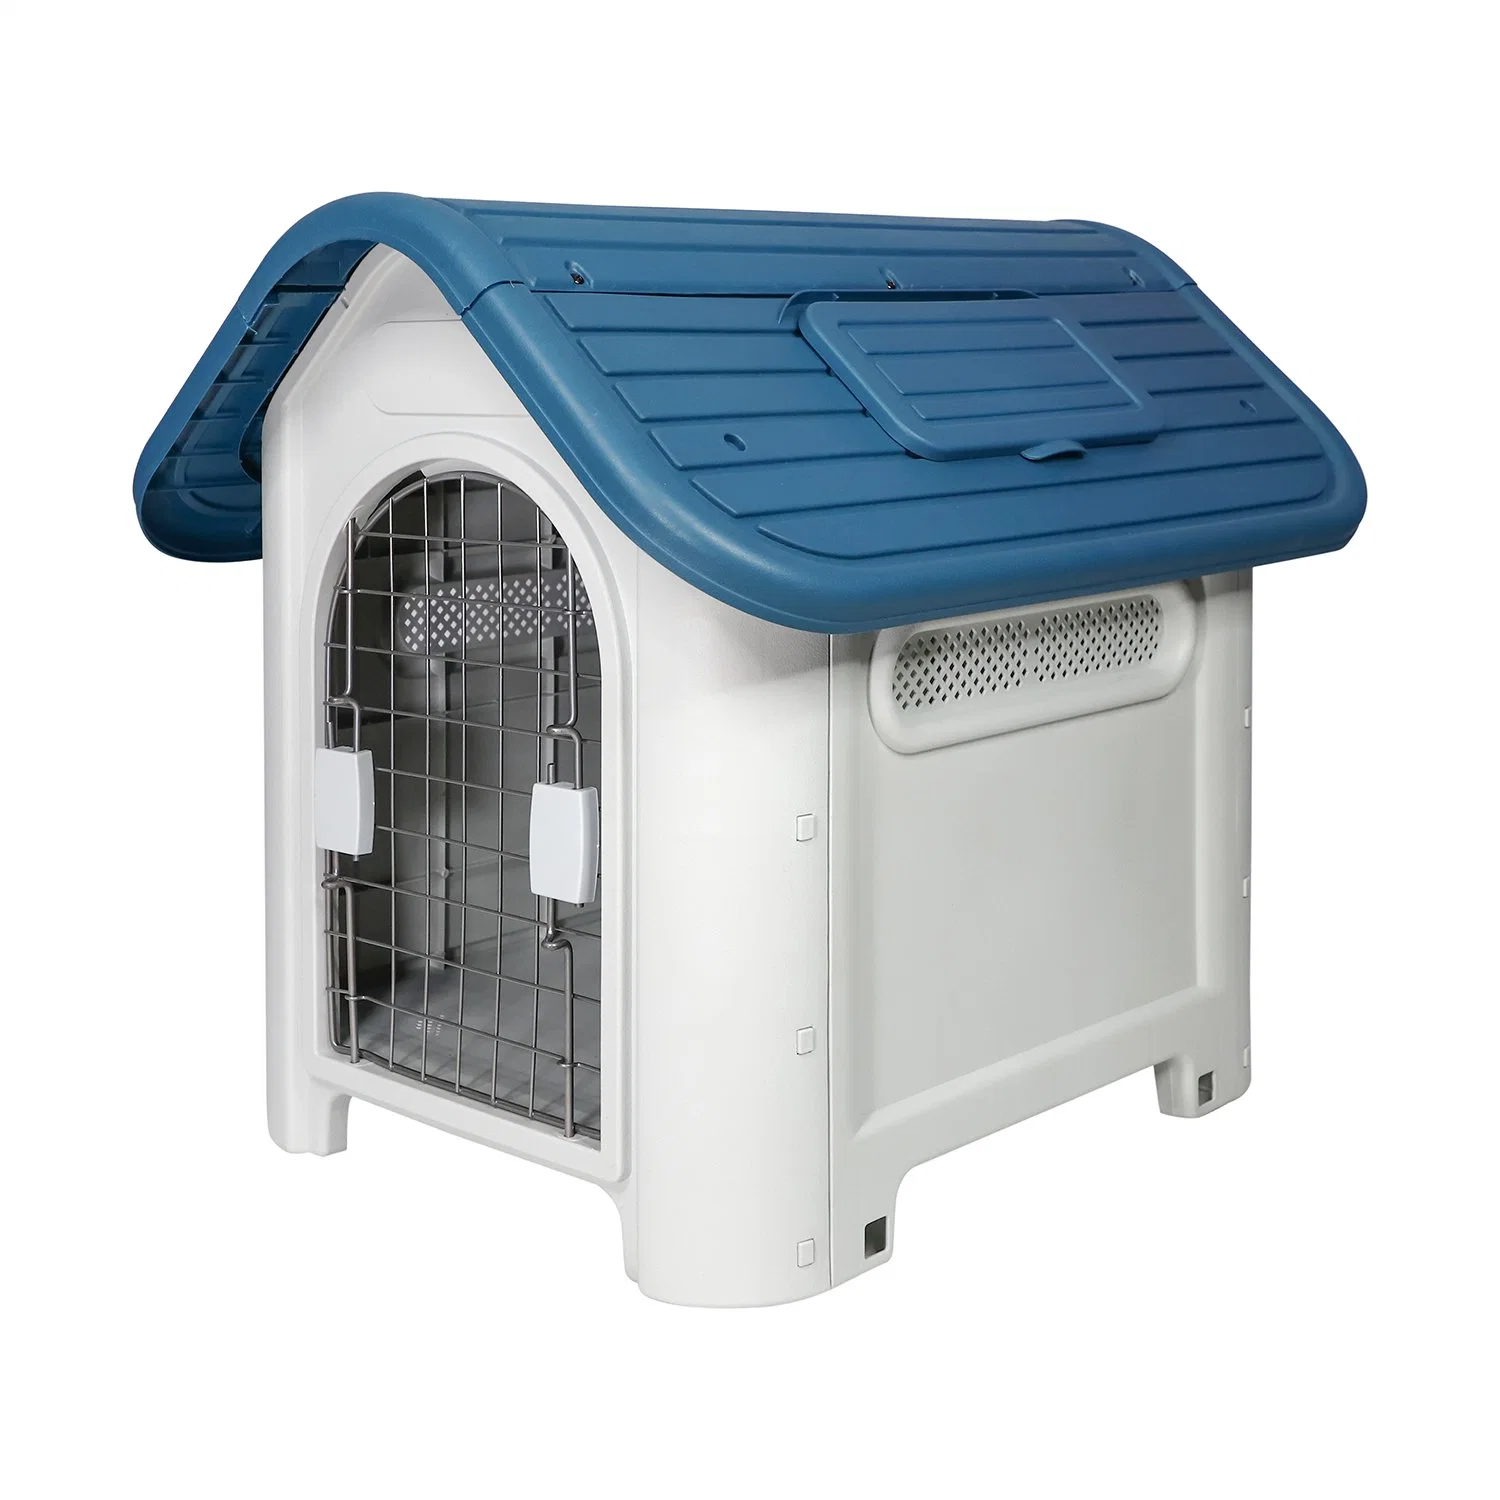 Venta en caliente fácil montaje fácil Seguro Eco-amigable PP material Dog Kennel All-Season Availability ventilación Weatherproof plástico Casa de mascotas al aire libre